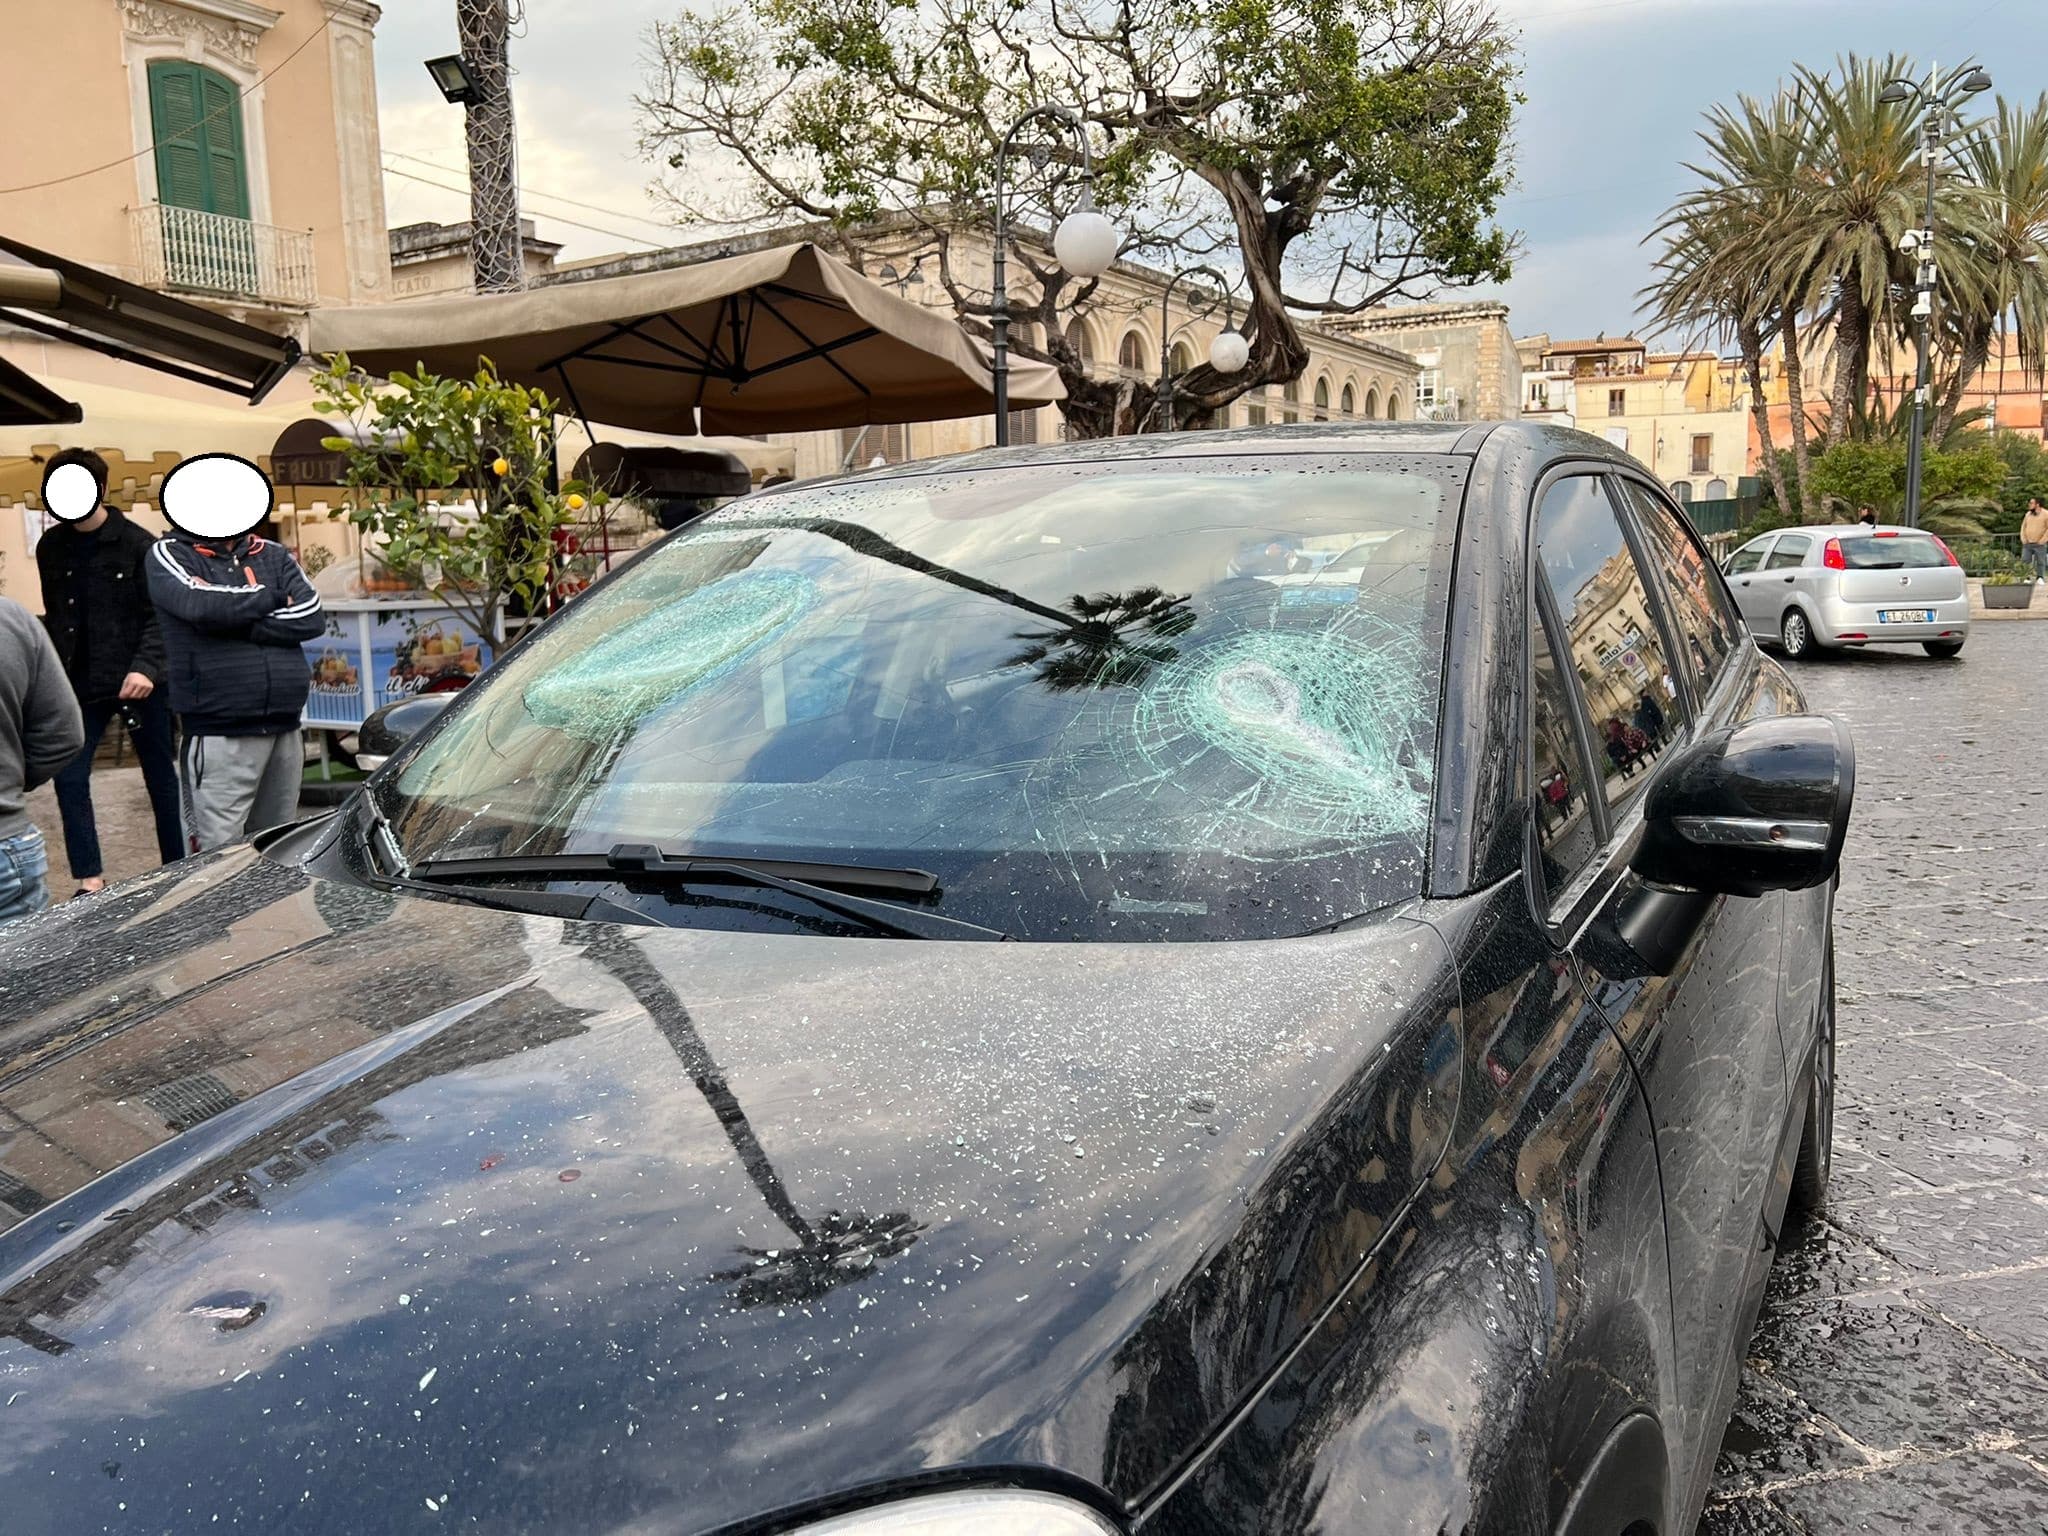 Violenta rissa in centro storico, due famiglie si “sfidano” a colpe di mazze e bastoni: 5 ai domiciliari, denunciato minorenne